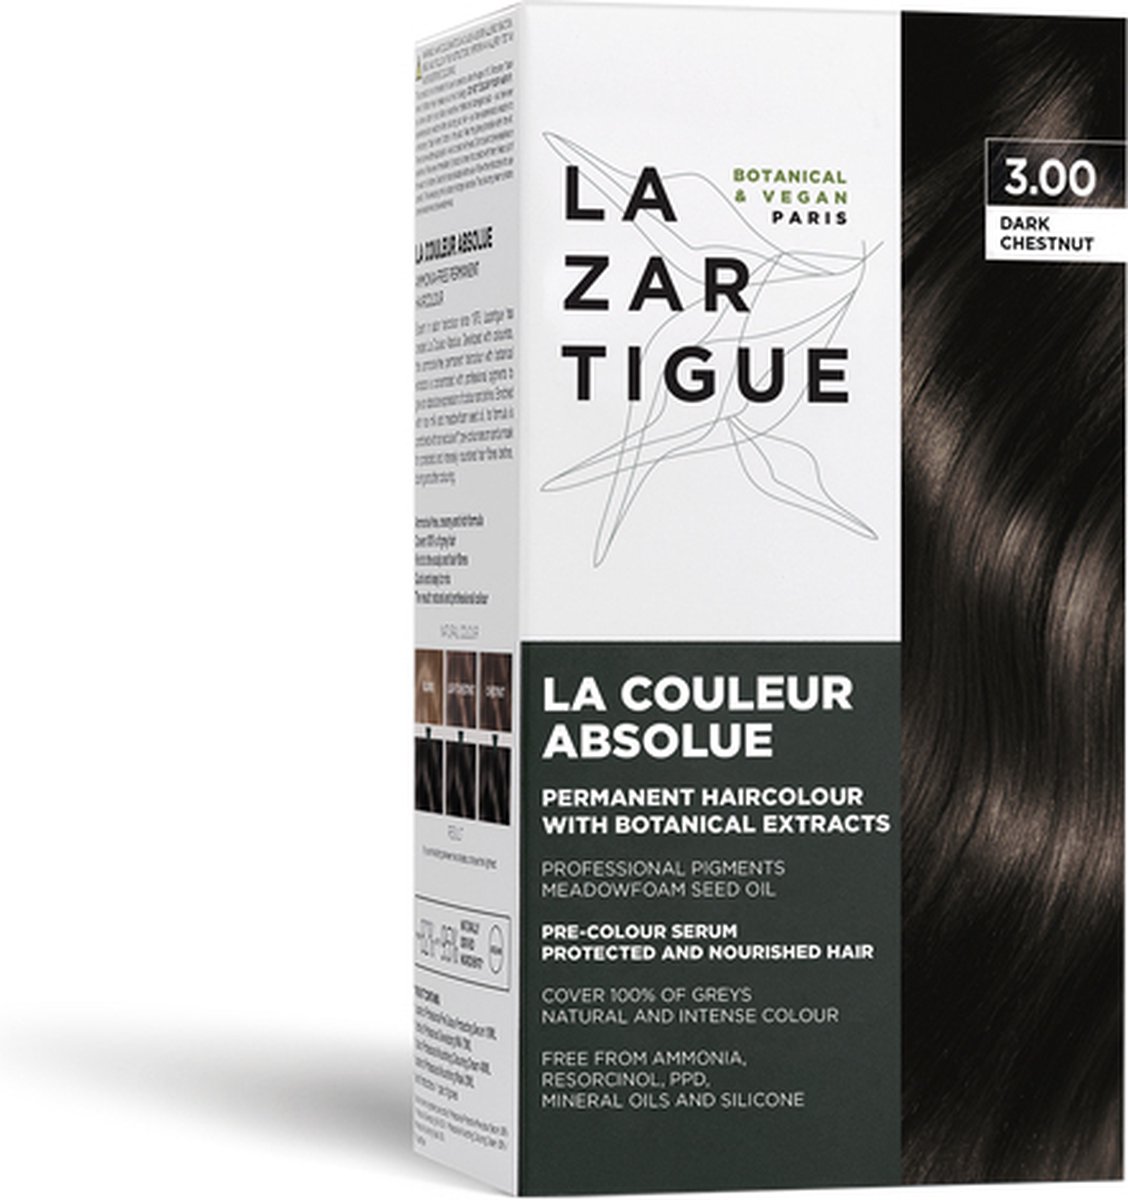 Lazartigue Pakket La Couleur Absolue Permanent Haircolour 3.00 Dark Chestnut